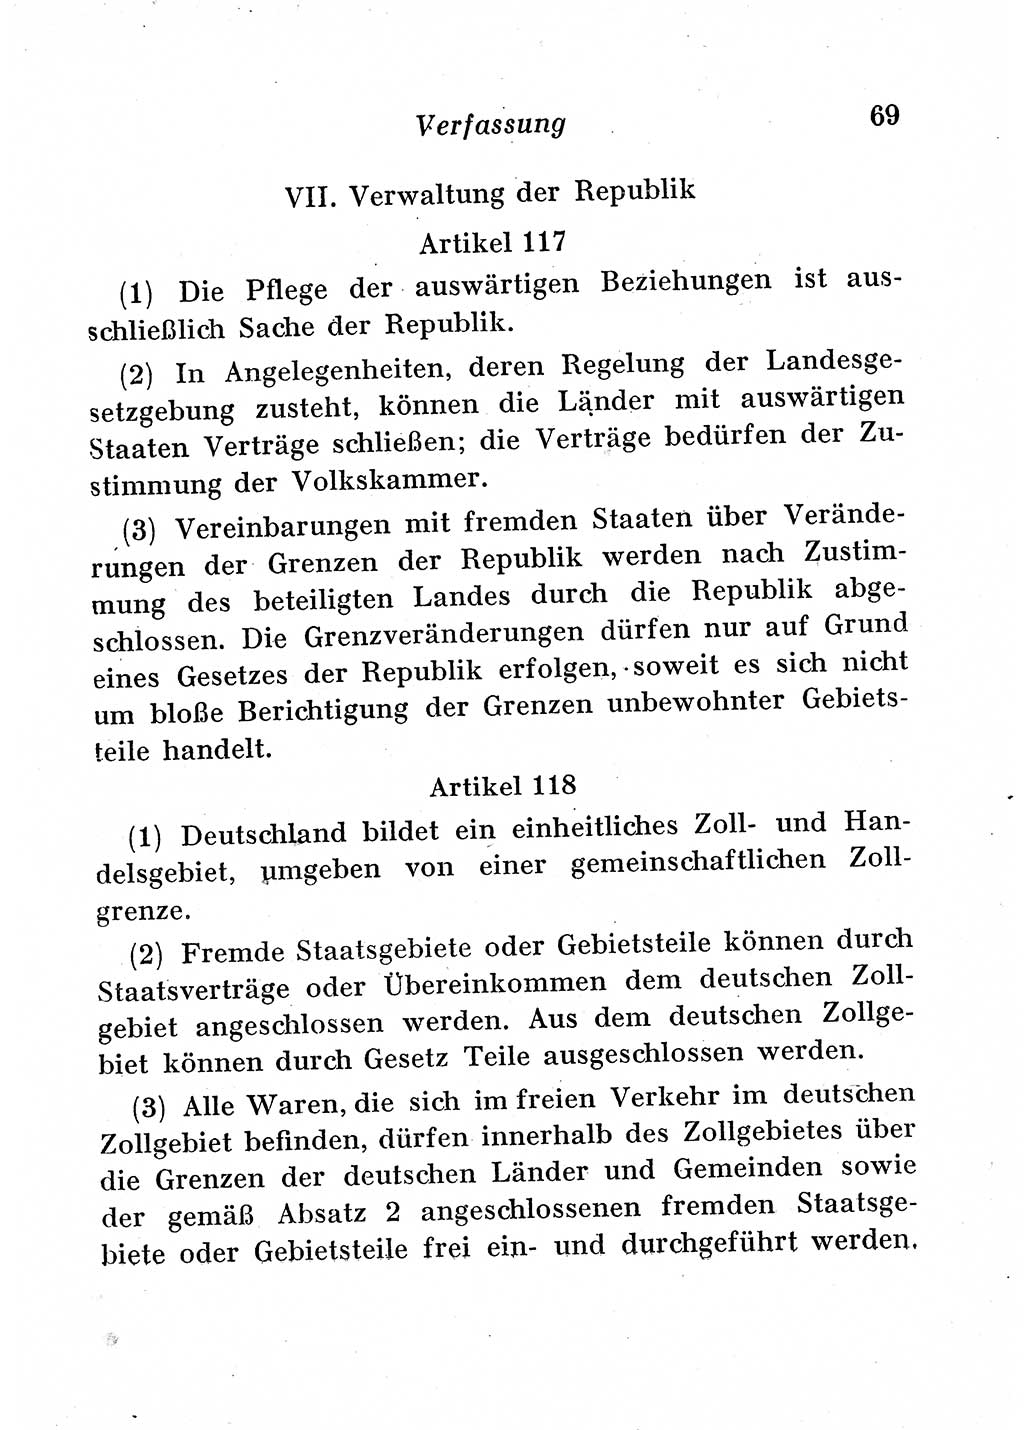 Staats- und verwaltungsrechtliche Gesetze der Deutschen Demokratischen Republik (DDR) 1958, Seite 69 (StVerwR Ges. DDR 1958, S. 69)